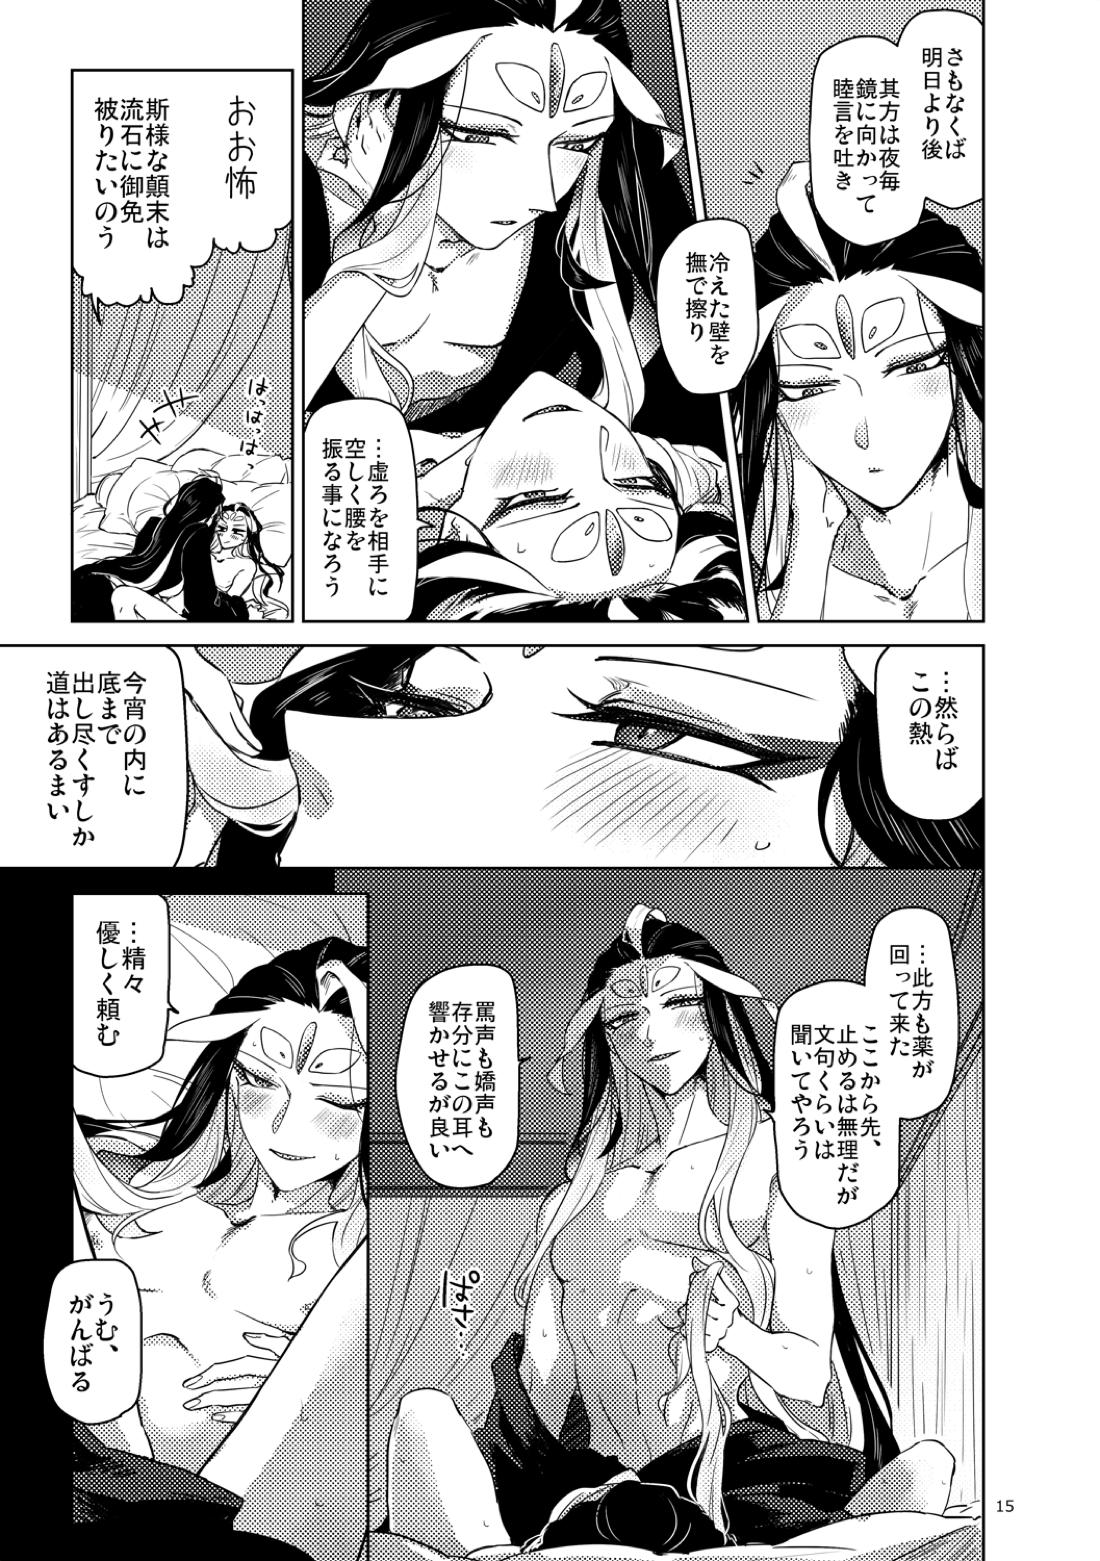 【BL漫画 Fate/Grand Order】男性体と無性体の始皇帝が同期するために媚薬を口にしながら肌を重ねるイチャイチャボーイズラブエッチ16